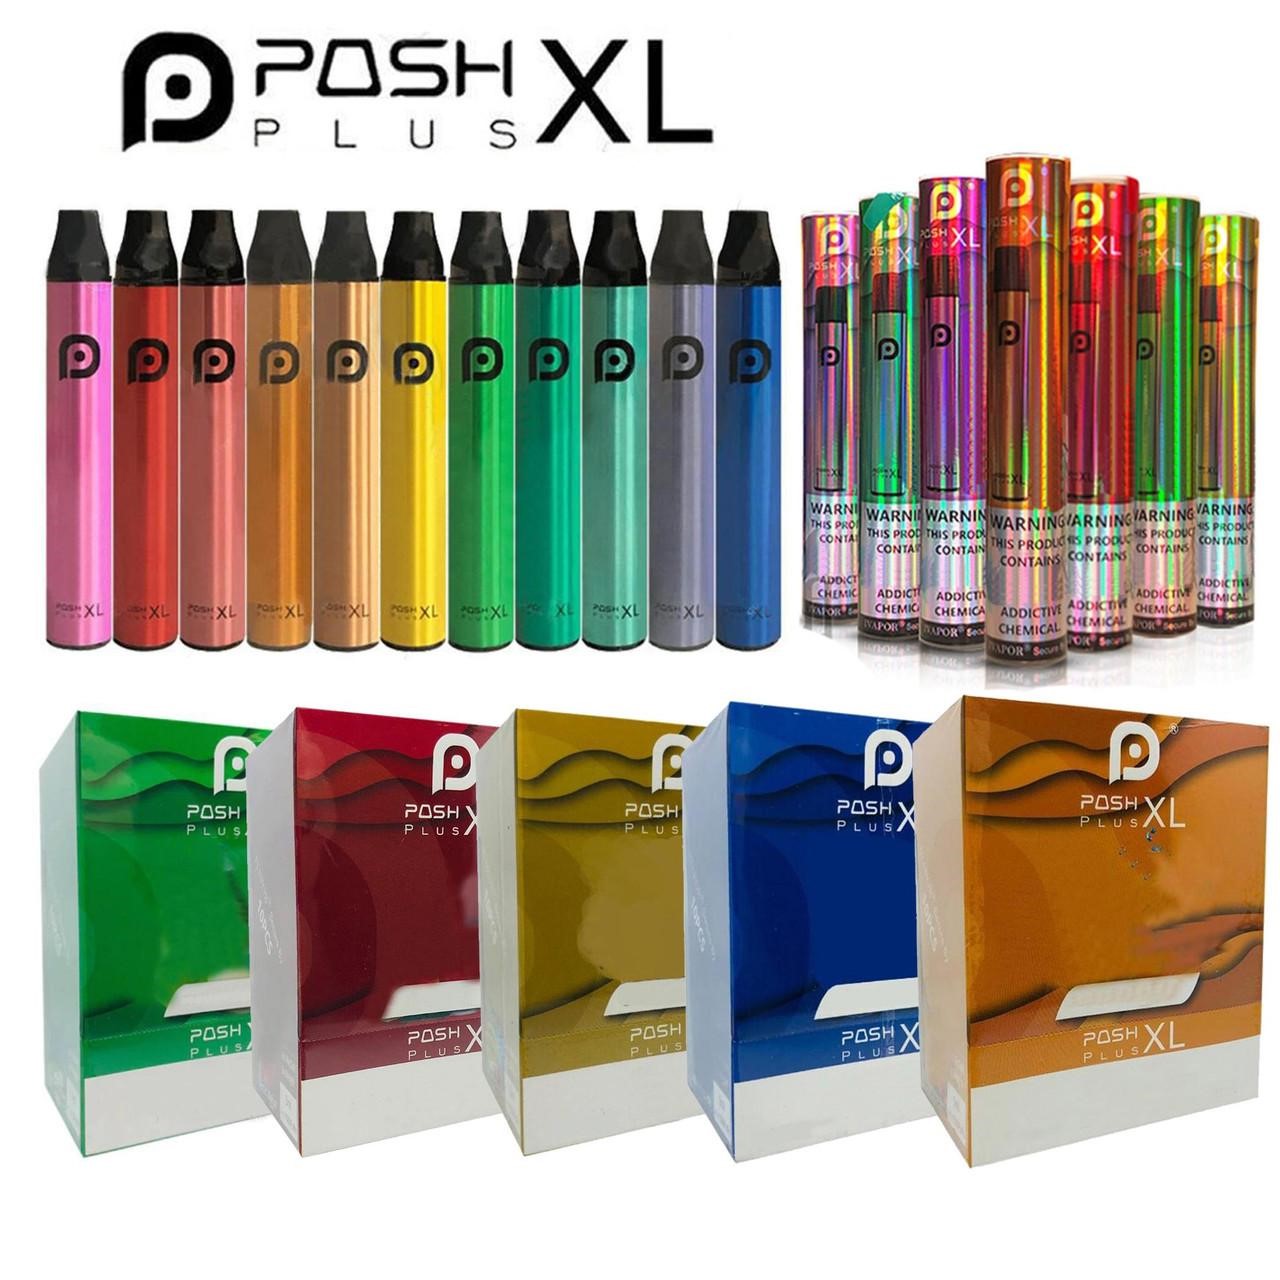 Posh Plus XL package.jpg